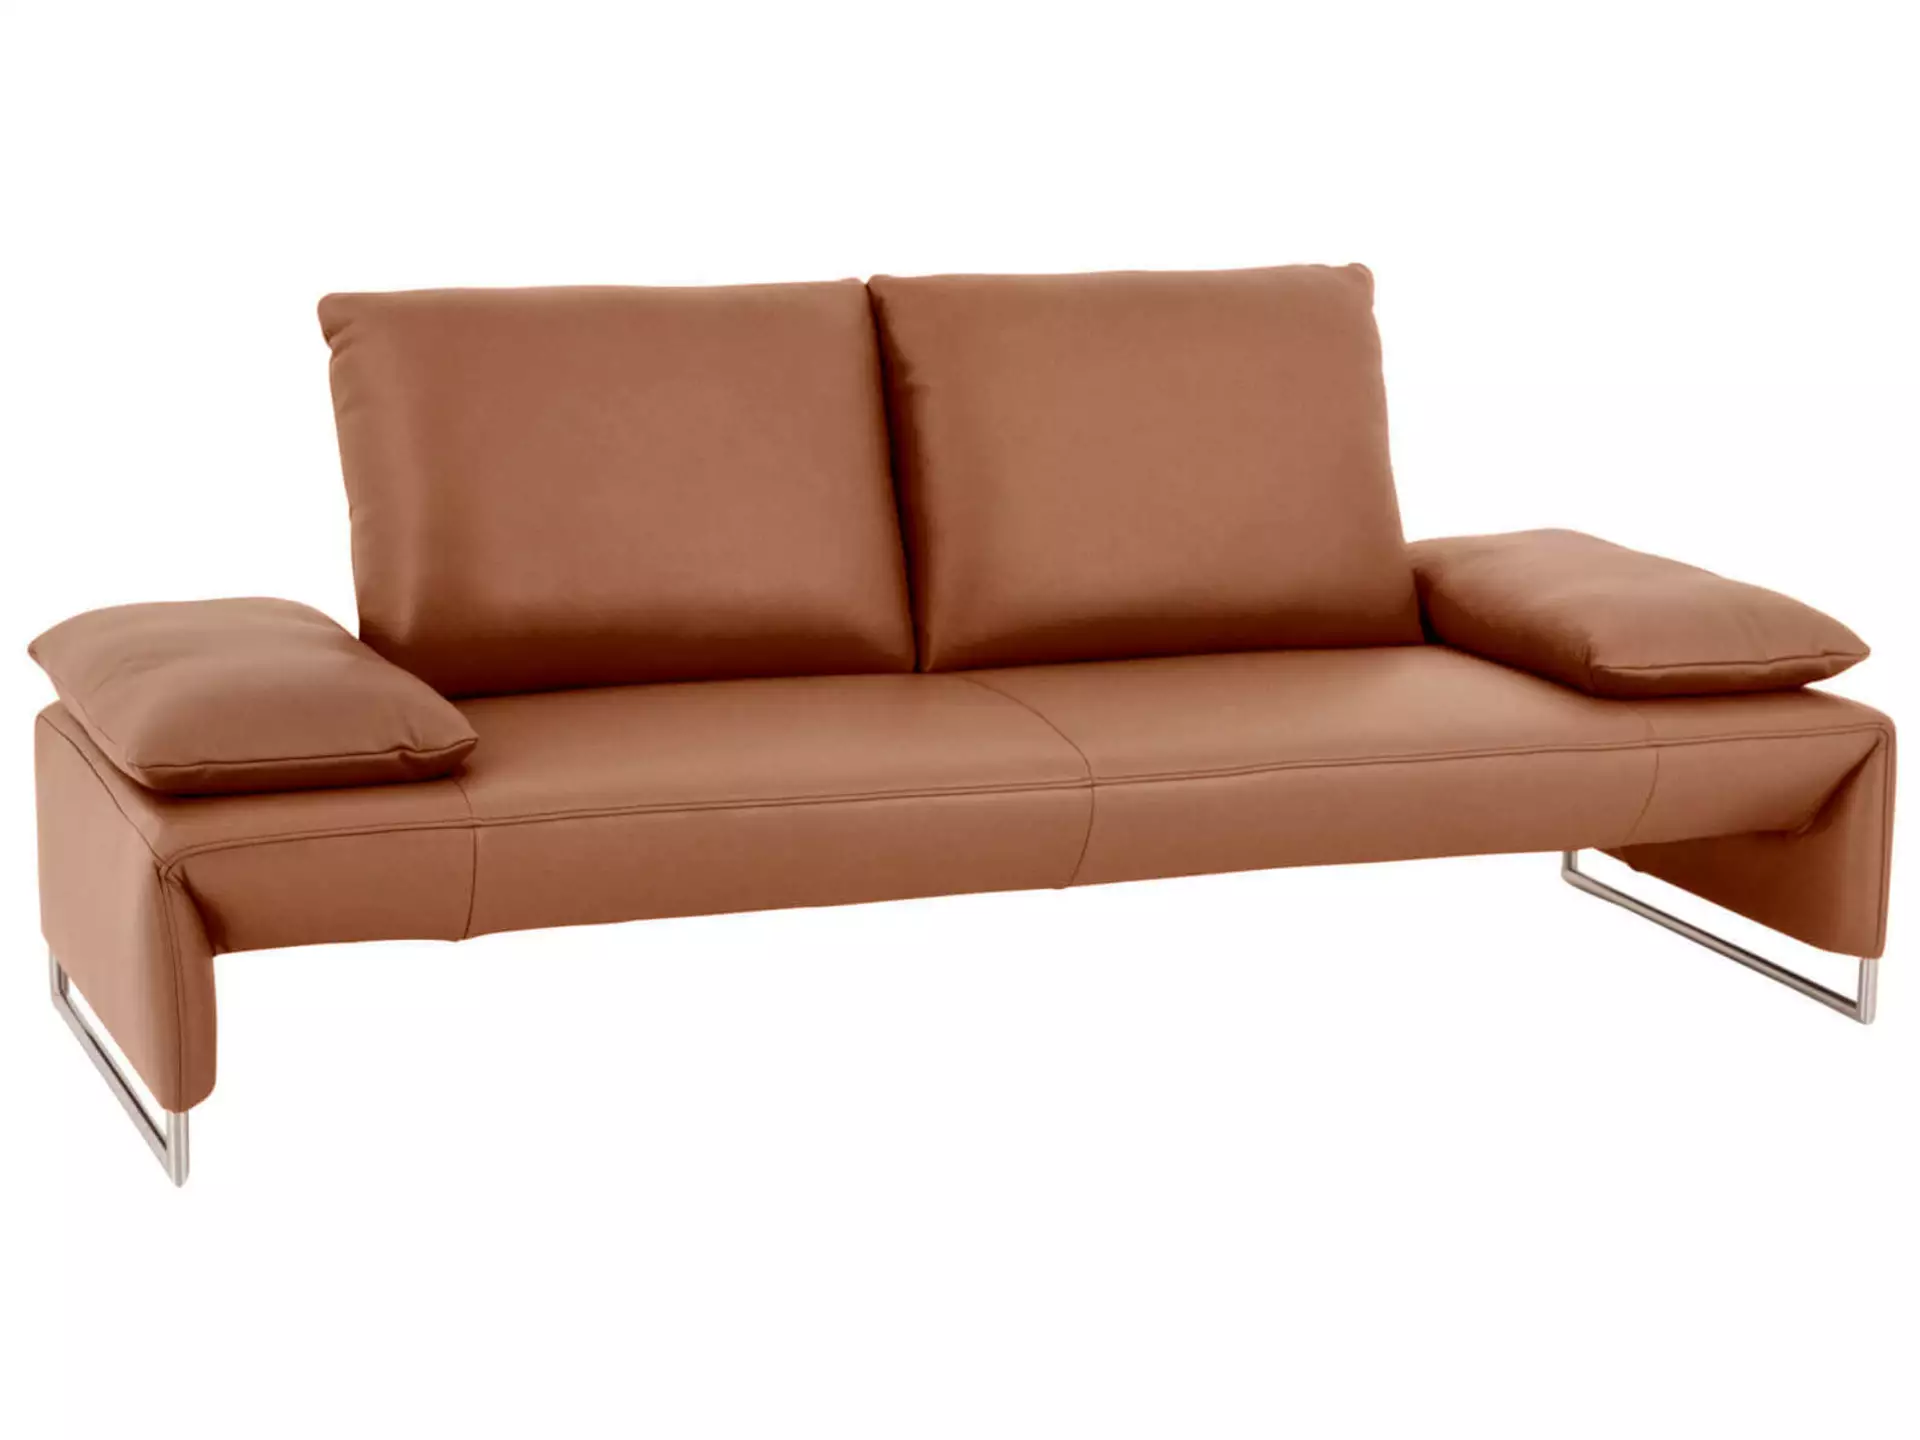 Sofa Ramano Basic B: 220 cm Koinor / Farbe: Chai / Material: Leder Basic